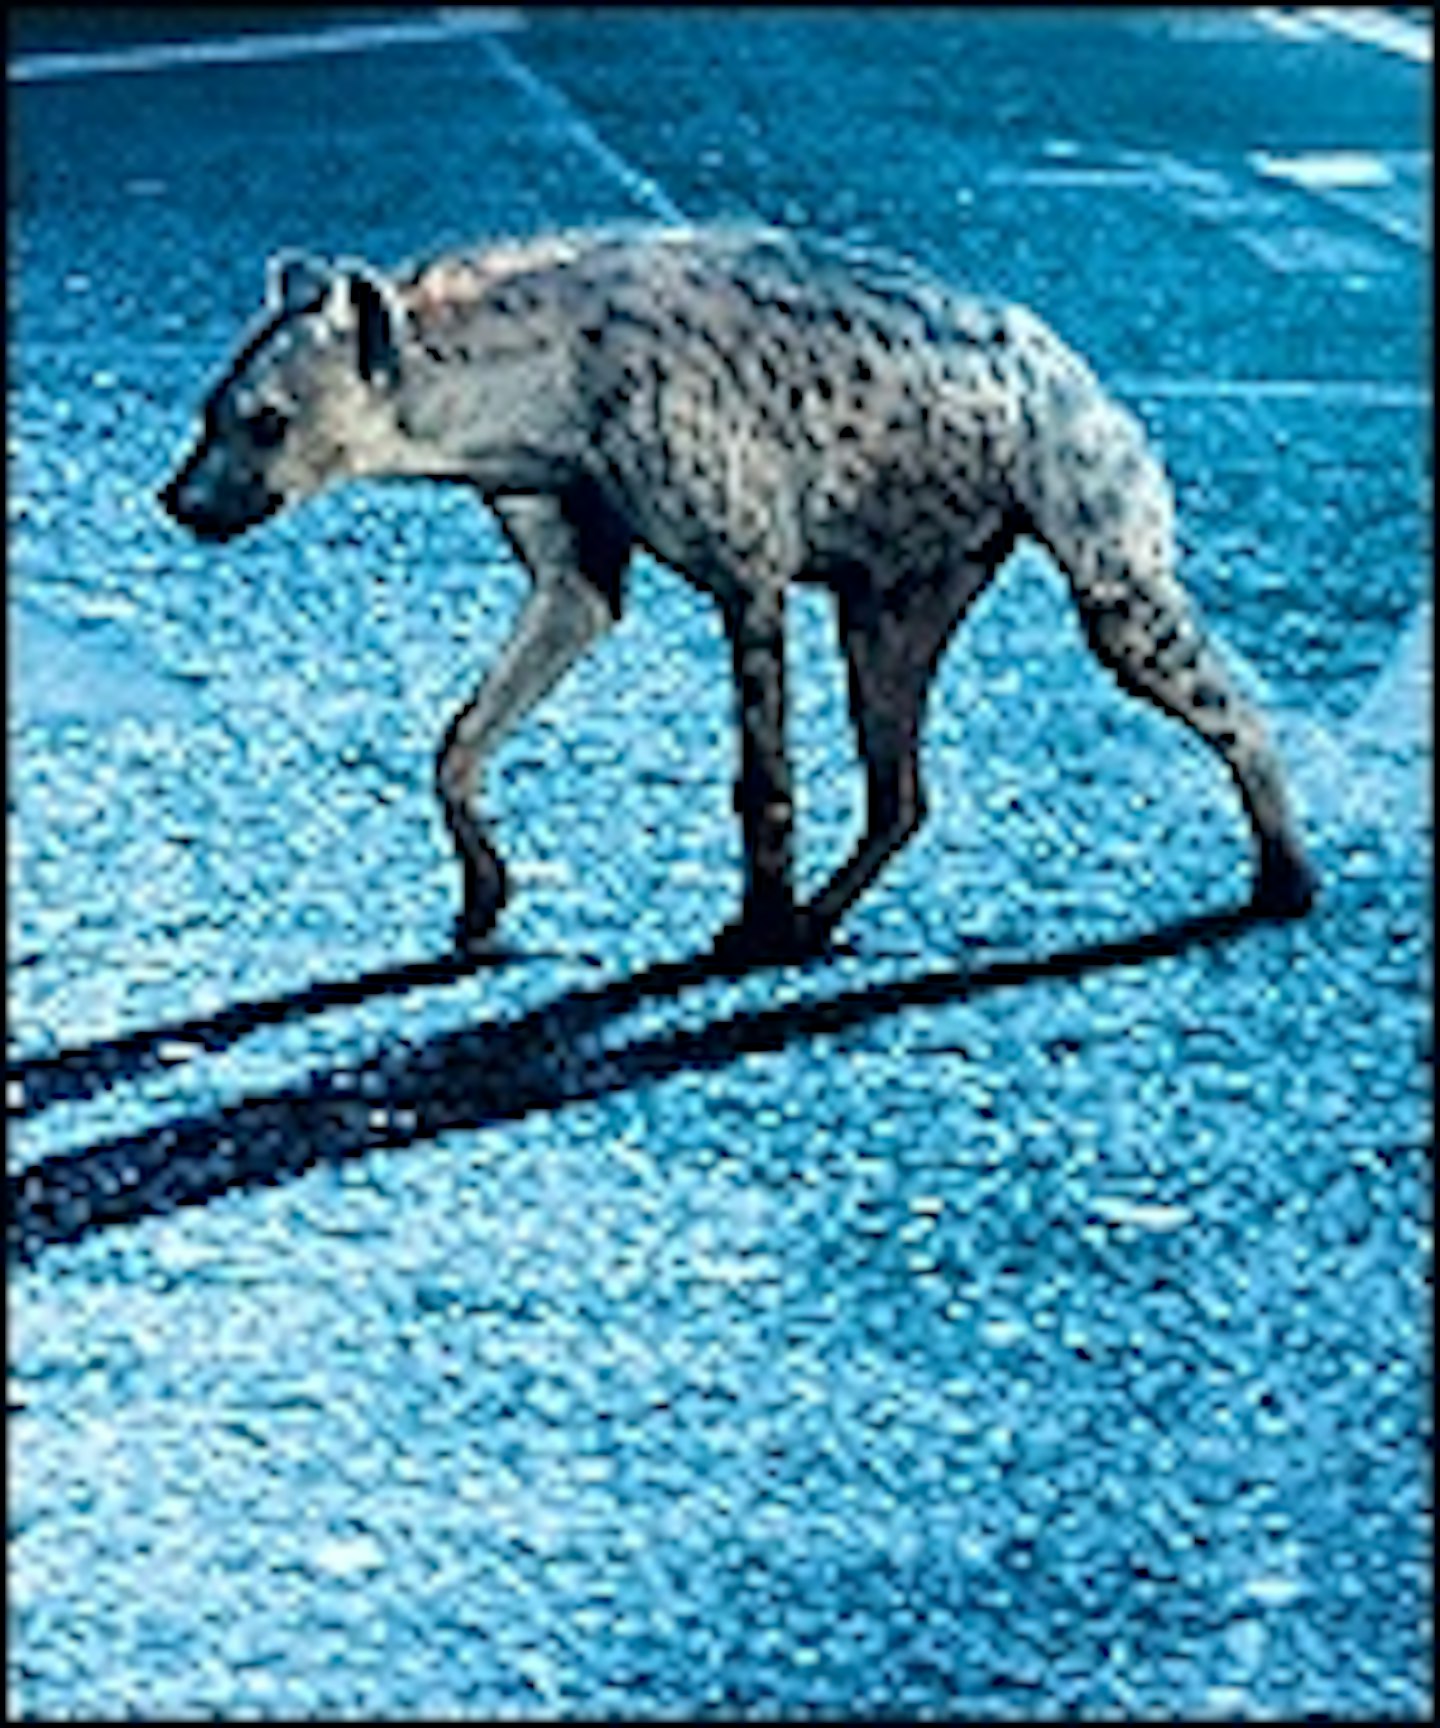 New International Poster for Edinburgh Film Festival Opener Hyena